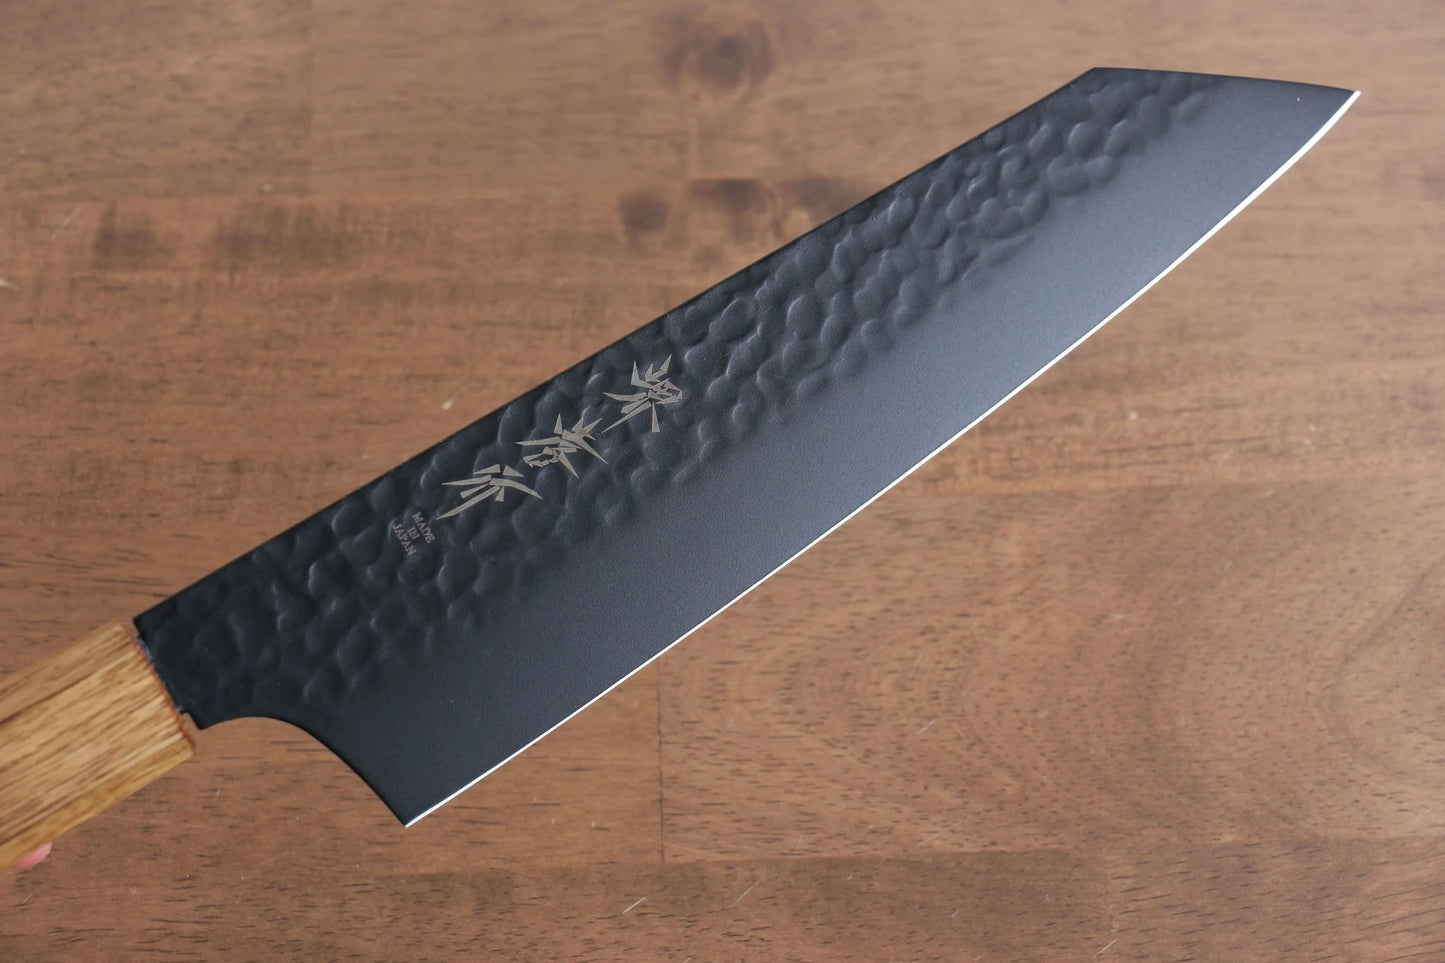 Marke: Sakai Takayuki Black Shadow Kurokage VG10. Handgeschmiedetes, teflonbeschichtetes Mehrzweckmesser. Japanisches Gyuto-Messer. 190 mm Griff aus gebrannter Eiche